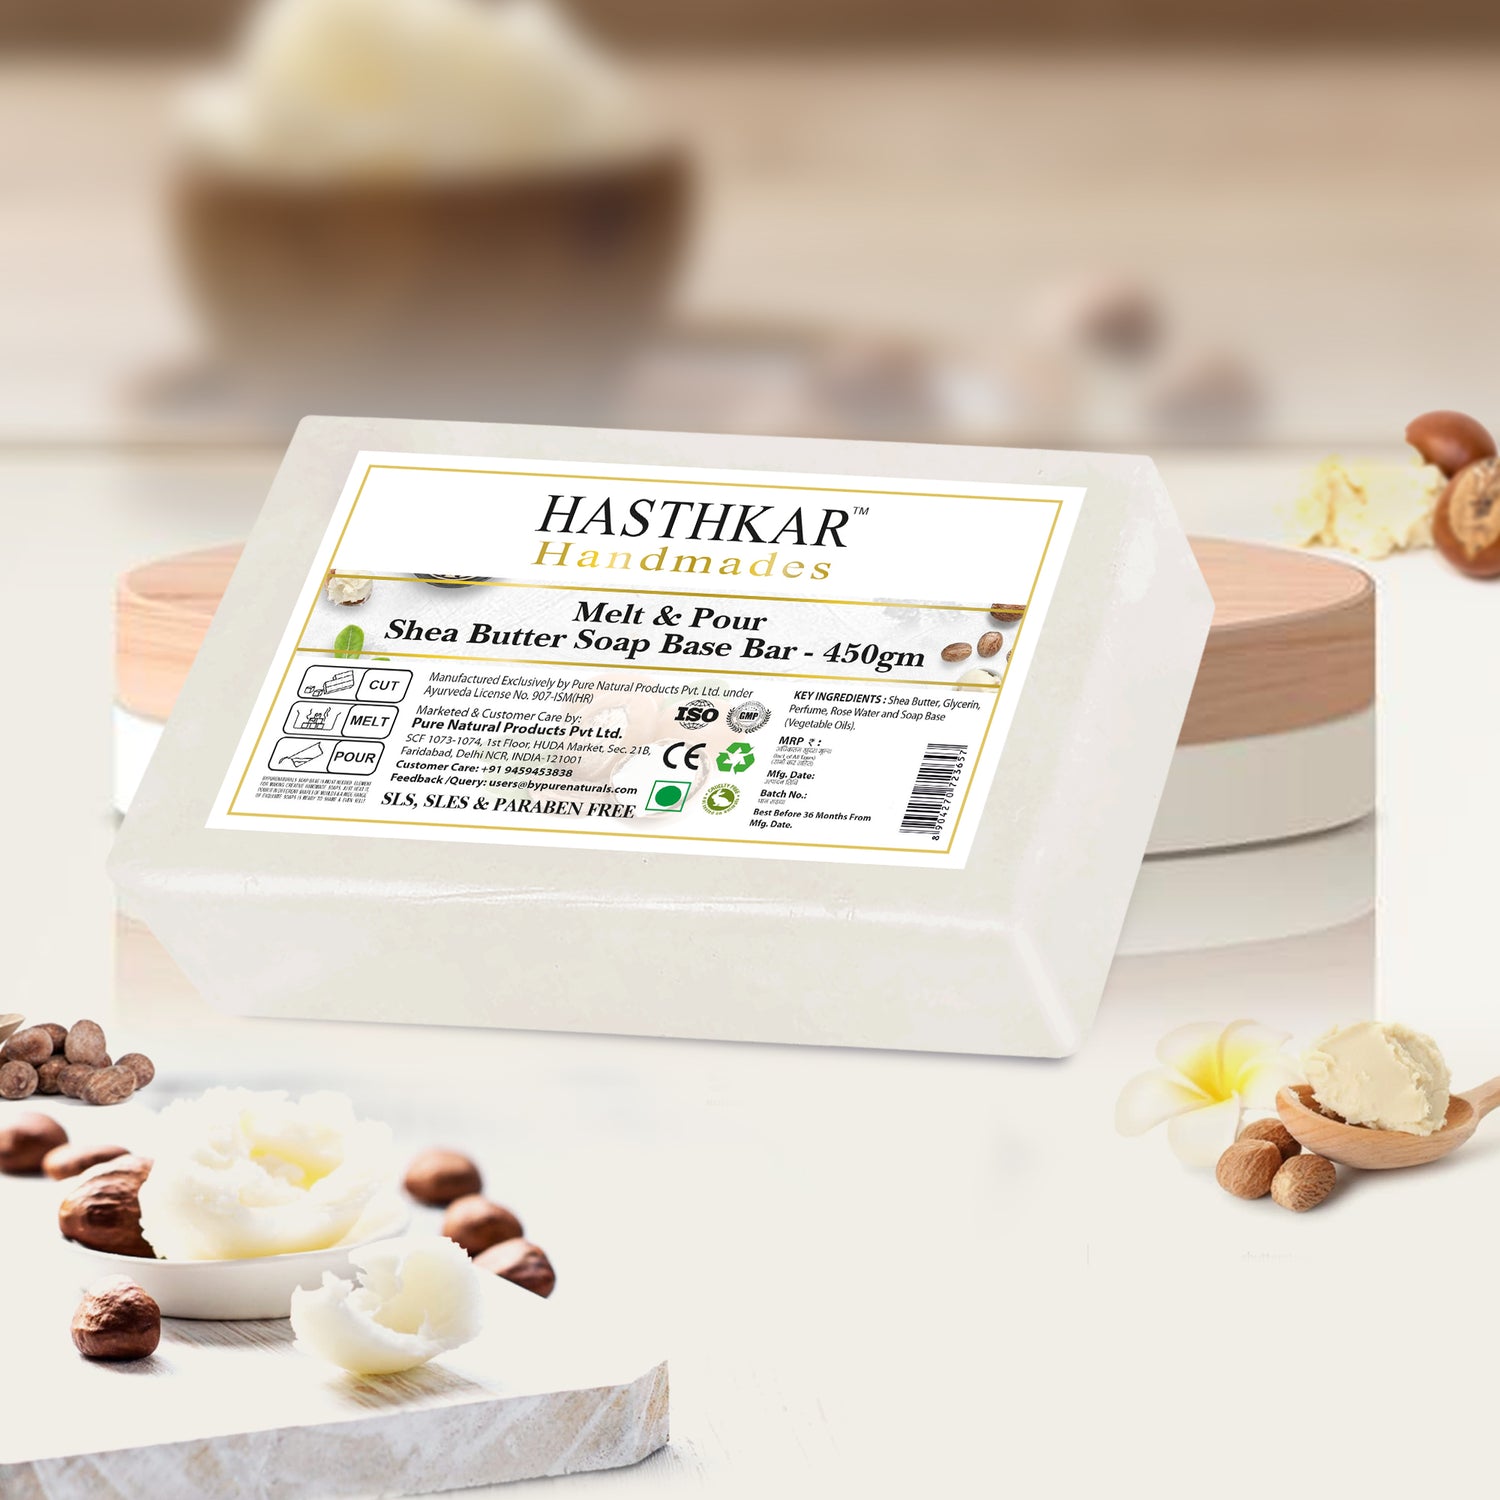 Hasthkar Handmades Soap Base Bar Shea Butter 450gm-3